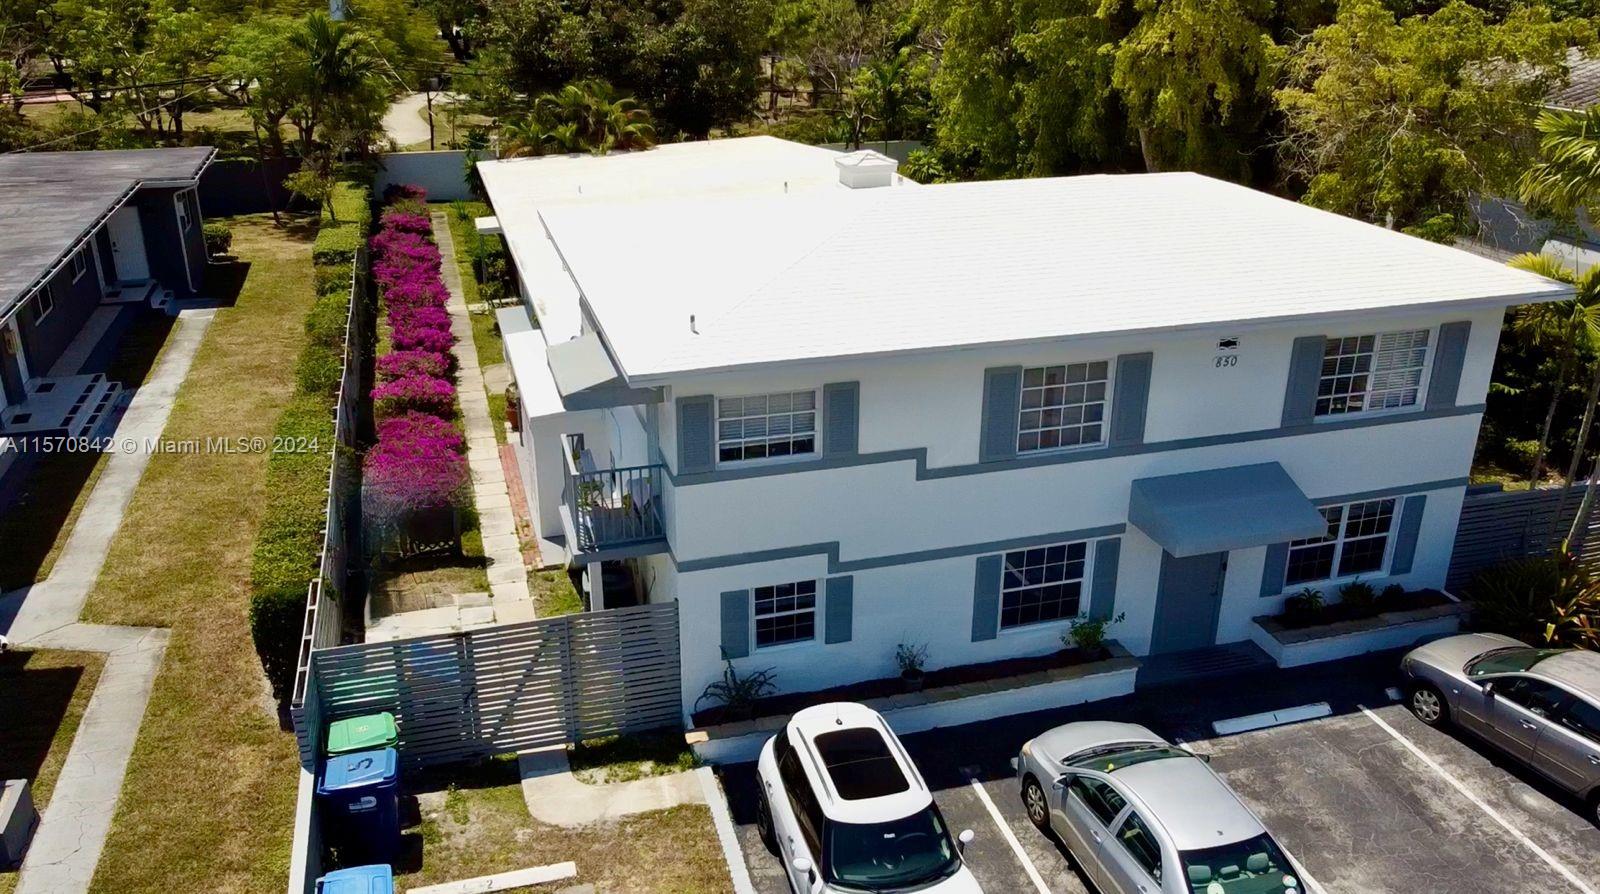 Rental Property at 850 Ne 90th St, Miami, Broward County, Florida -  - $2,225,000 MO.